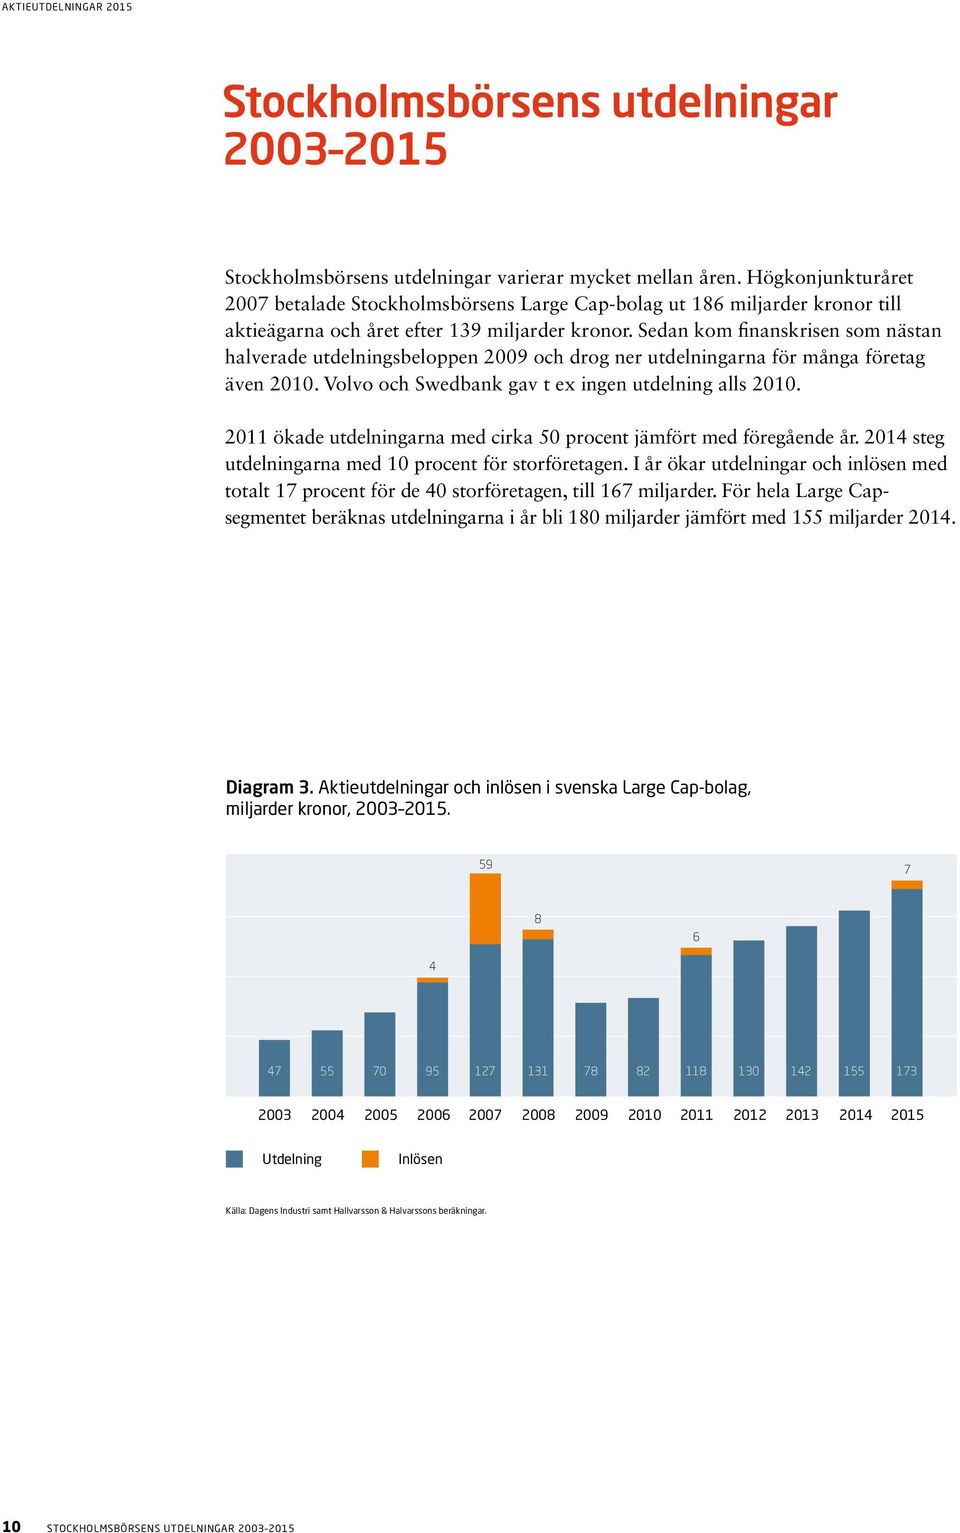 Sedan kom finanskrisen som nästan halverade utdelningsbeloppen 2009 och drog ner utdelningarna för många företag även 2010. Volvo och Swedbank gav t ex ingen utdelning alls 2010.